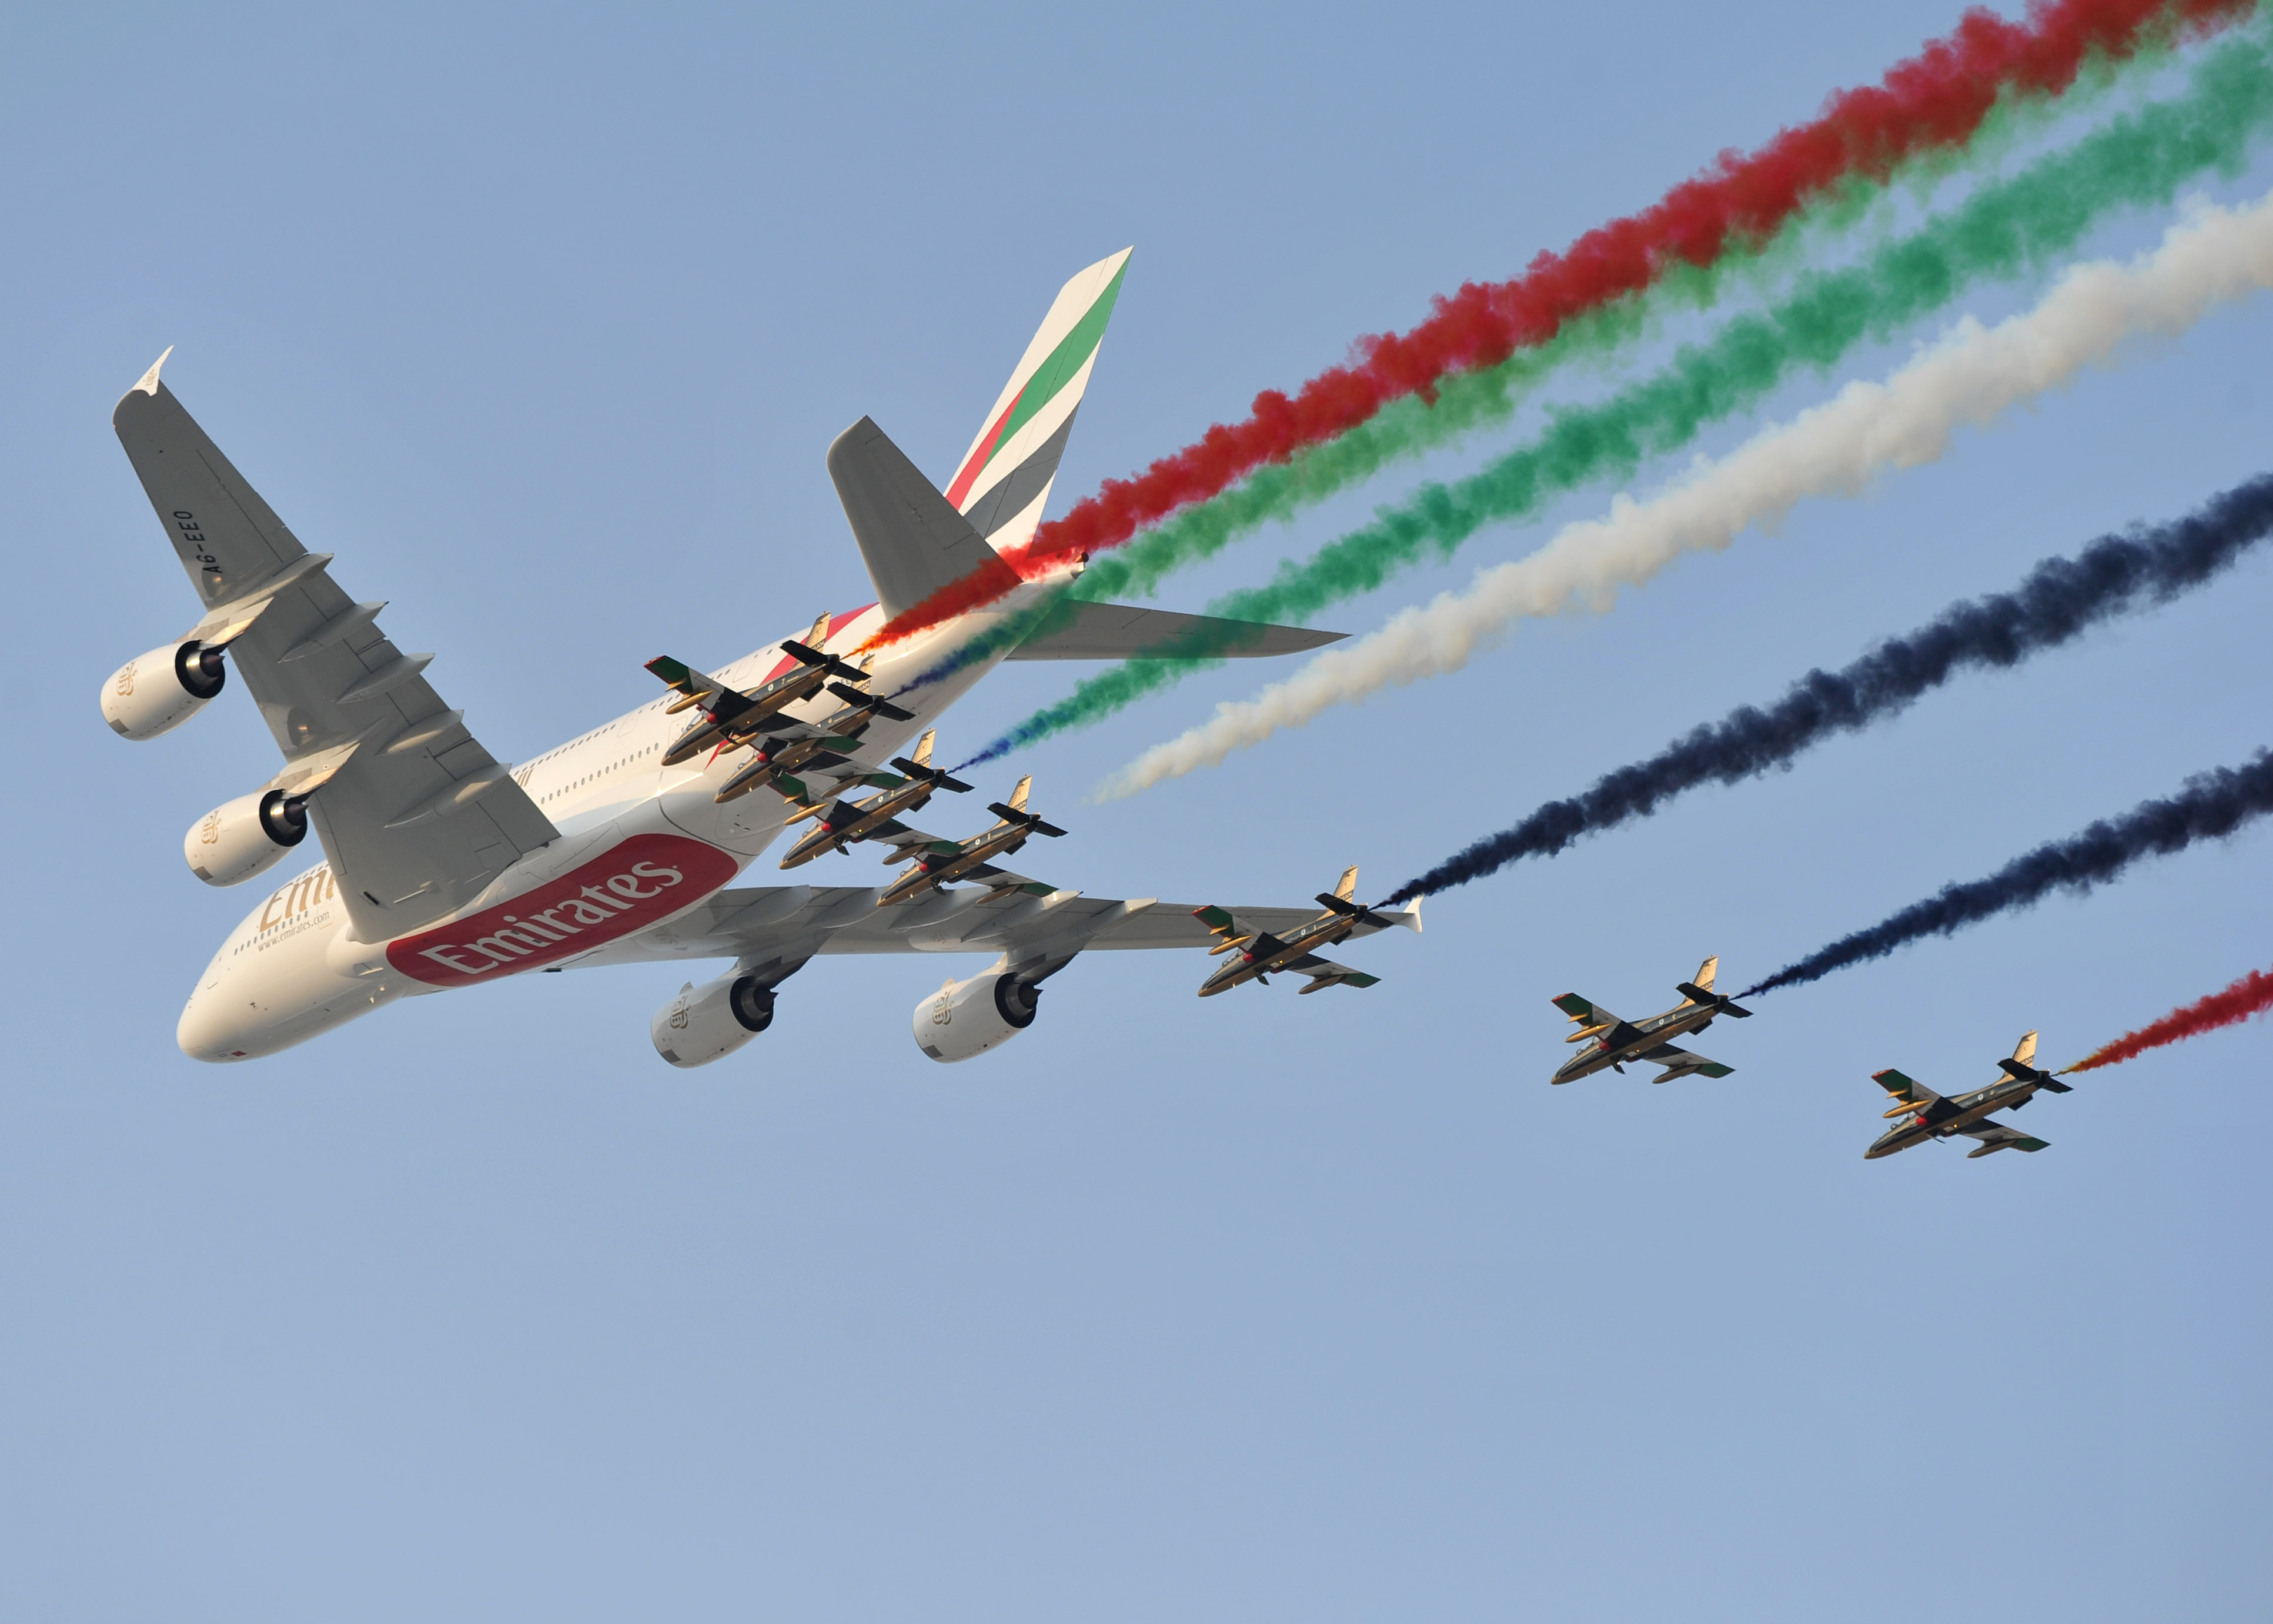 Foto-2-EK-A380-at-Dubai-Air-Show.jpg